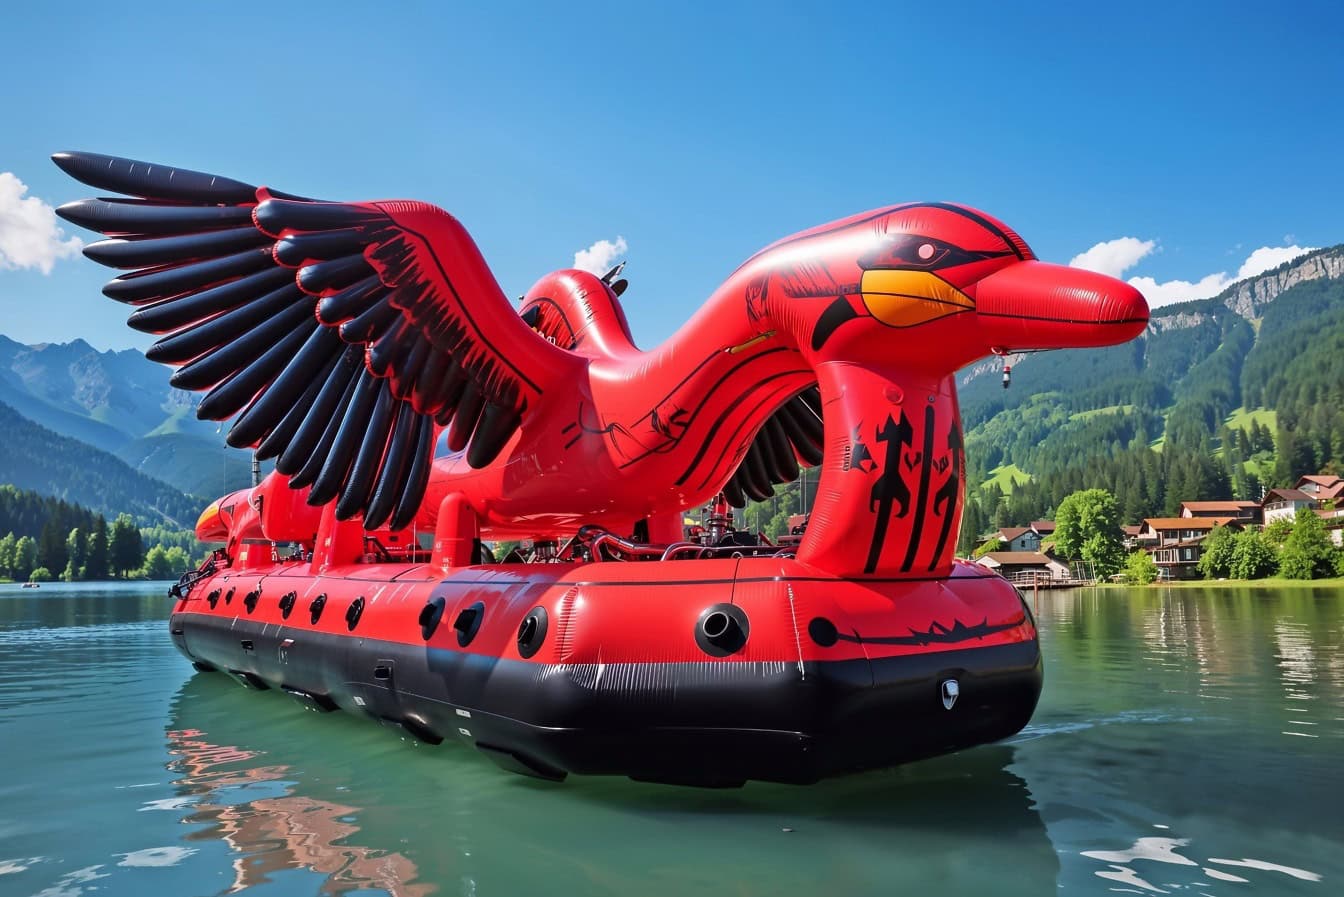 Bè bơm hơi trong một hình dạng của một con chim đỏ-đen nổi trên mặt nước